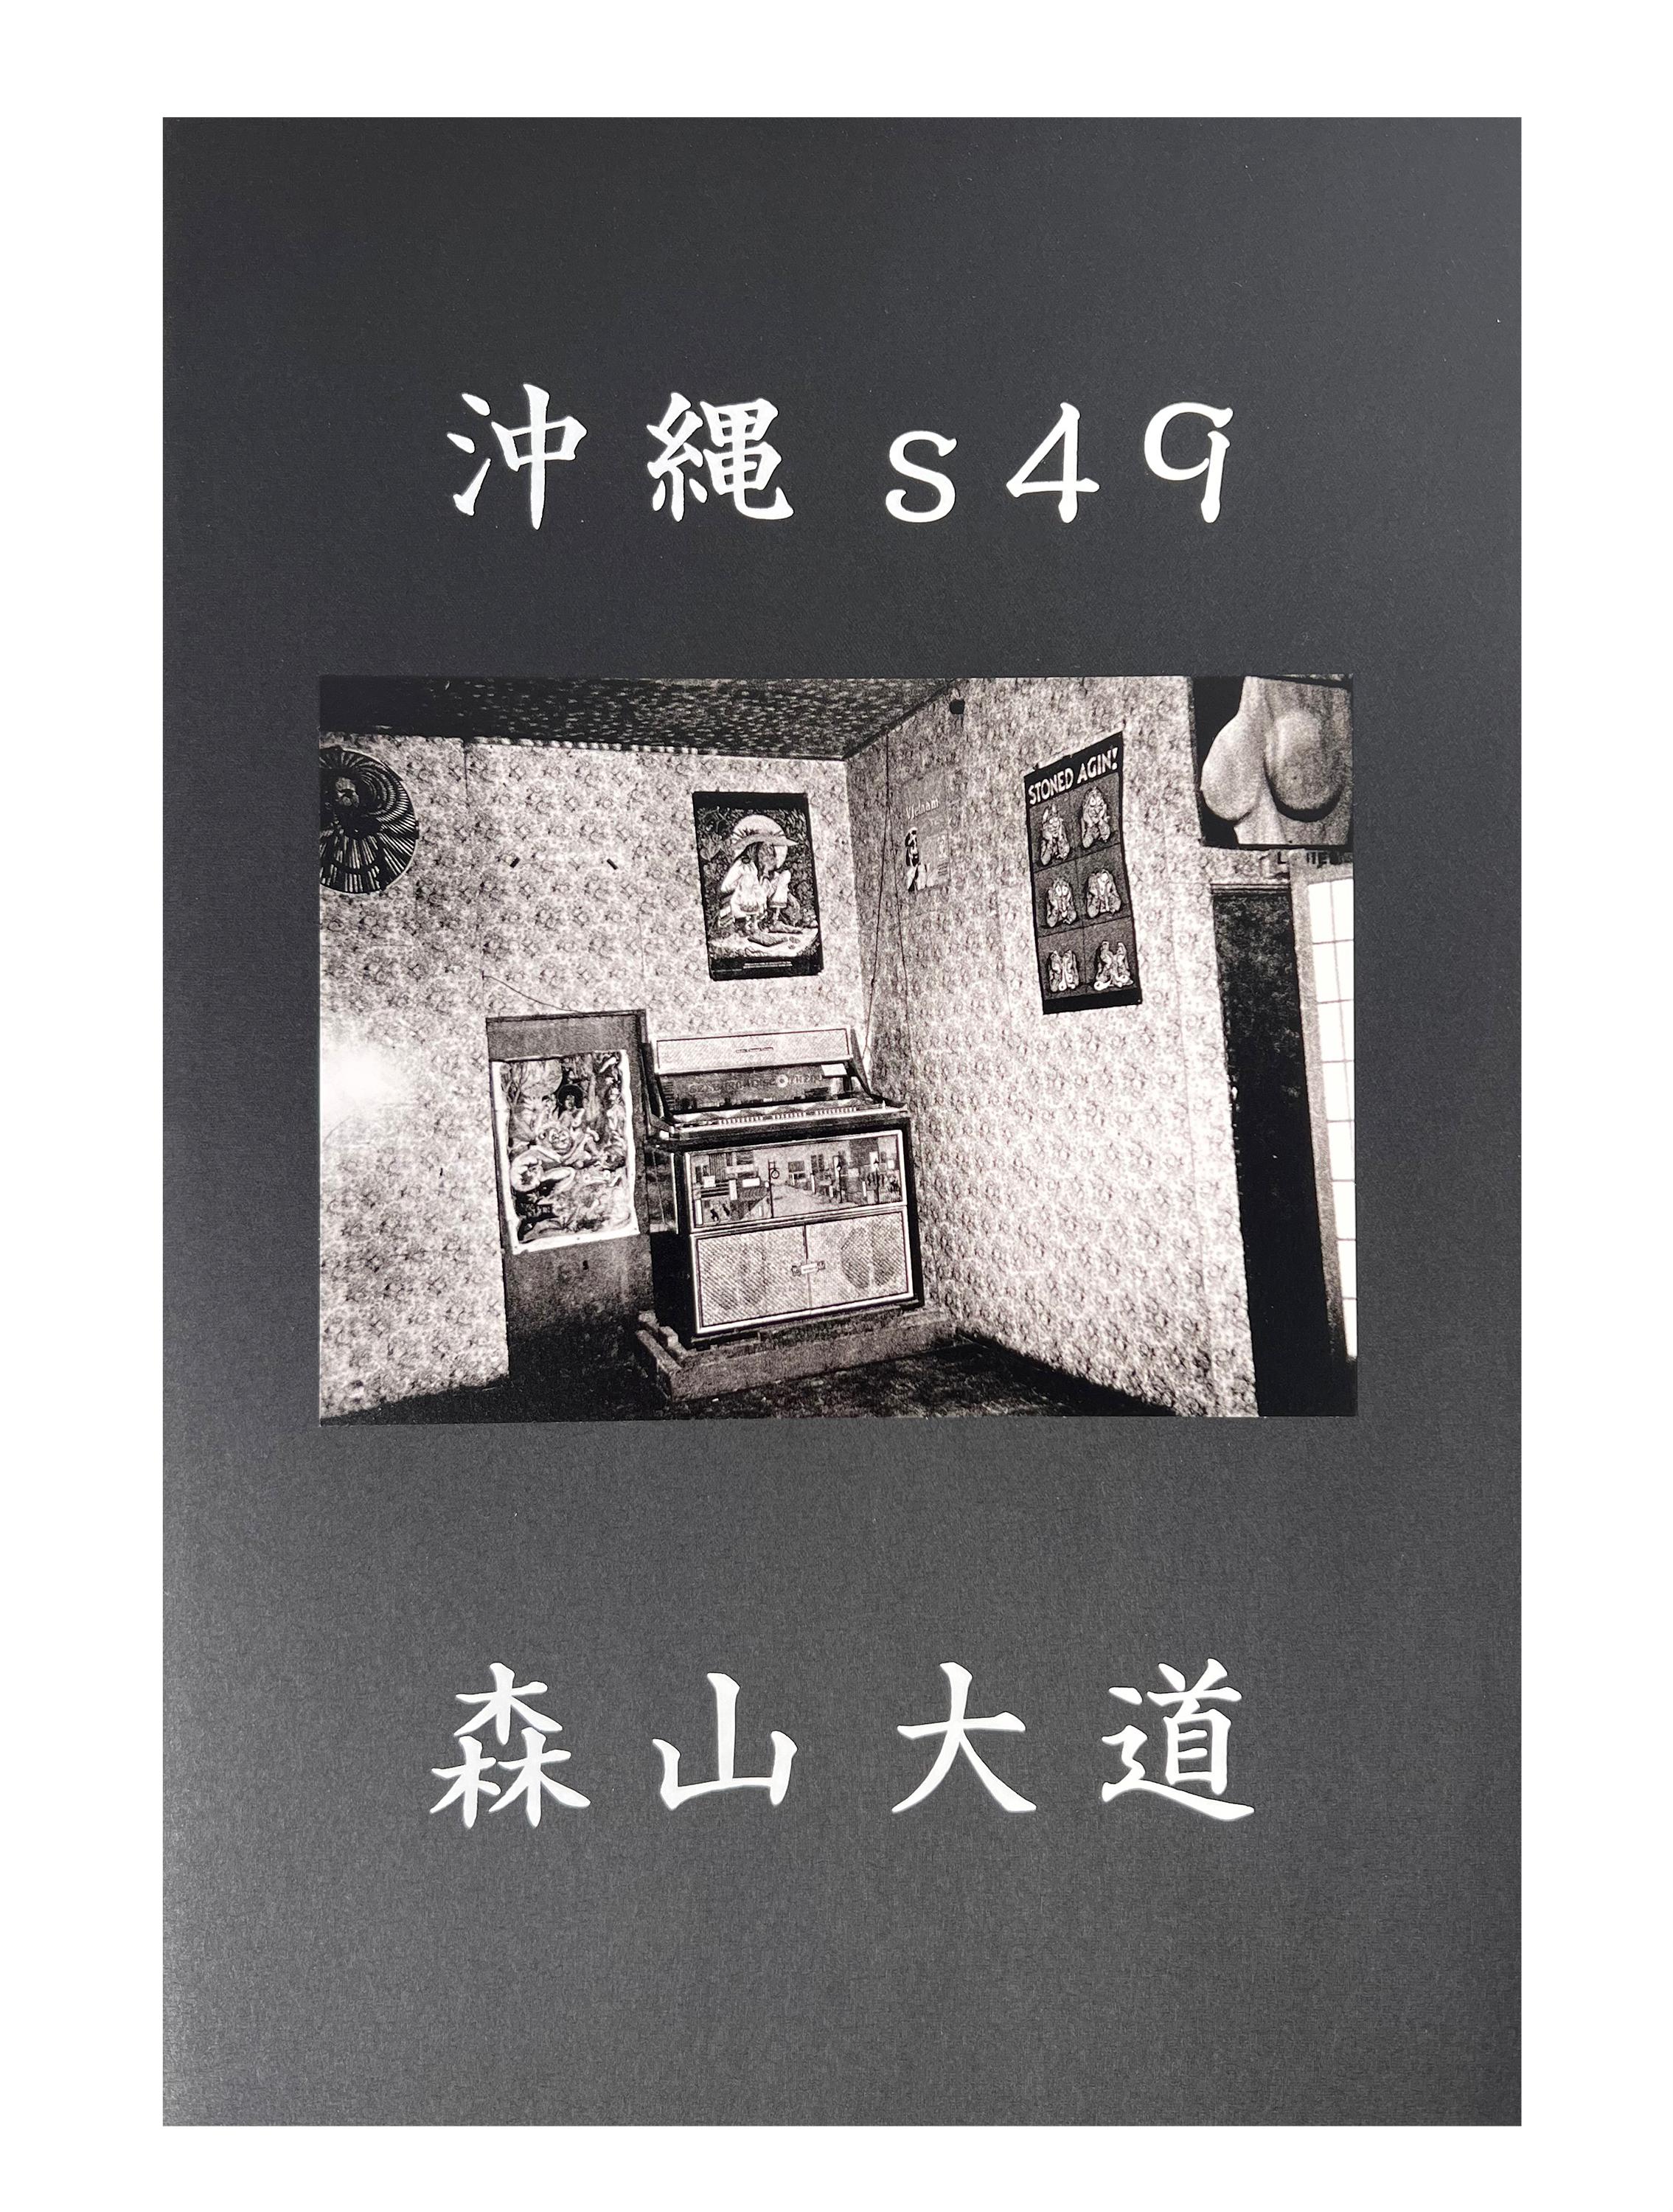 Signed Daido Moriyama photo book (Daido Moriyama Okinawa s49) For Sale 3